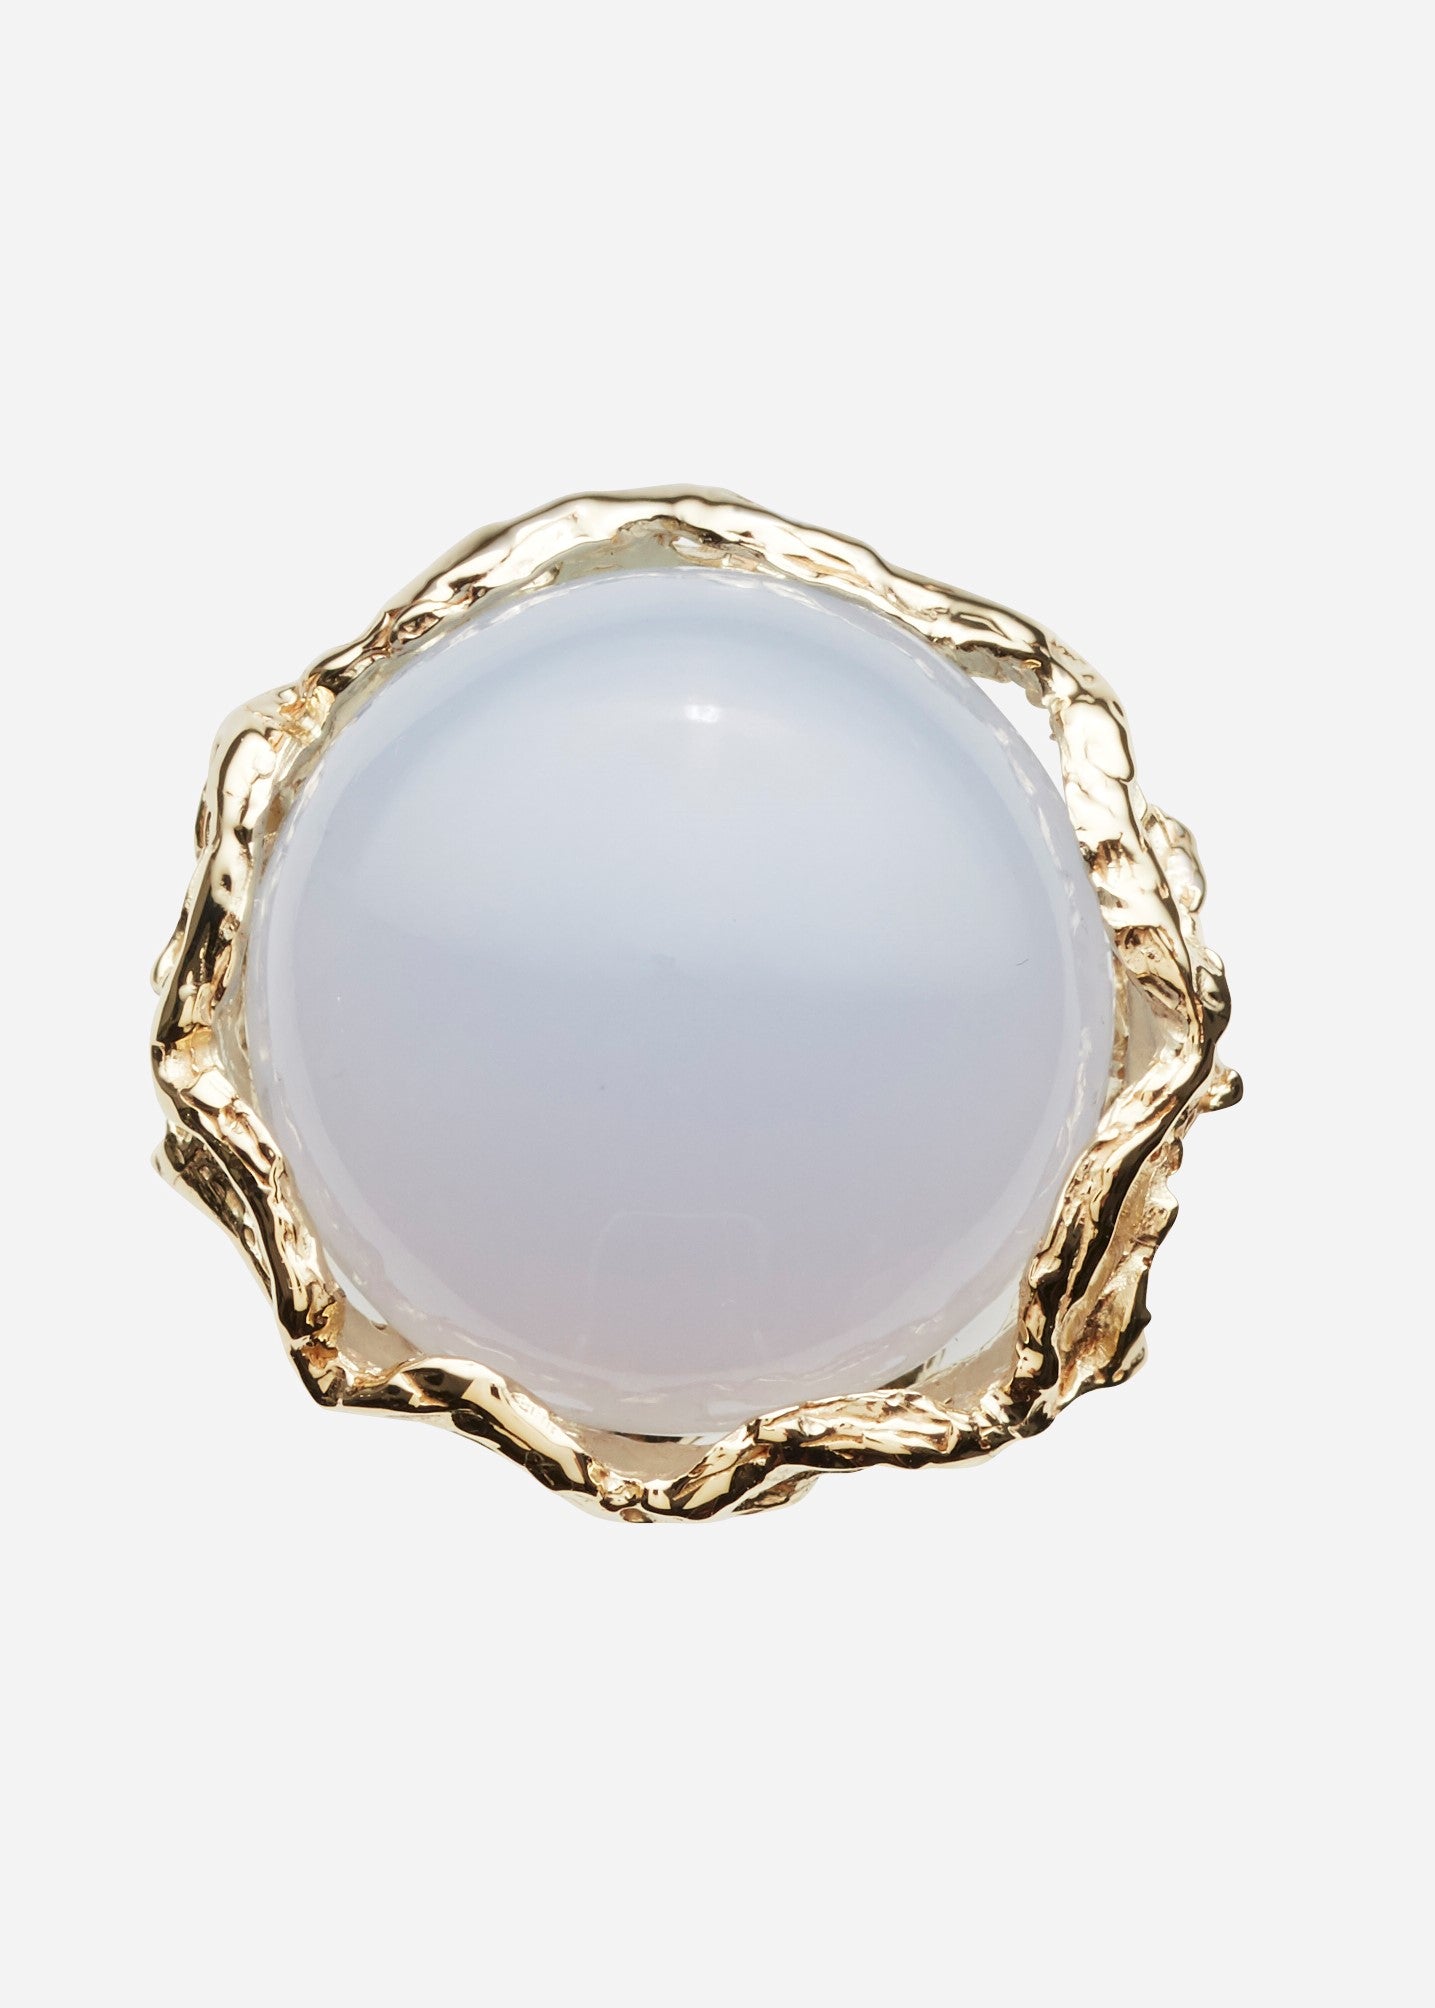 Bon Bon Royal ring quartz